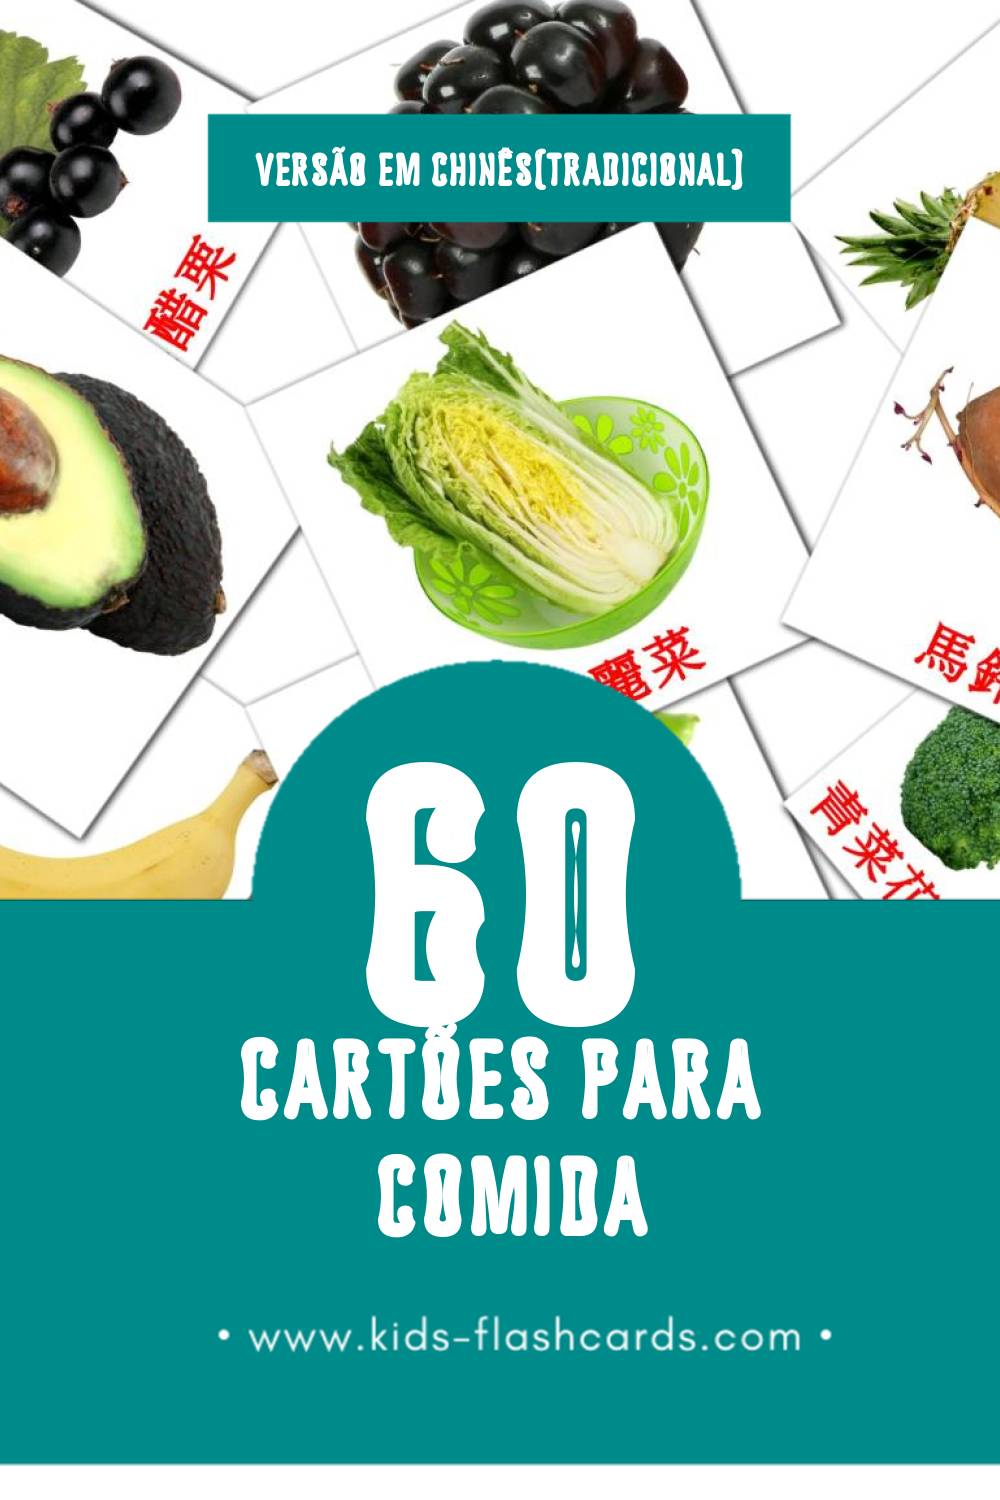 Flashcards de 食物 Visuais para Toddlers (60 cartões em Chinês(tradicional))